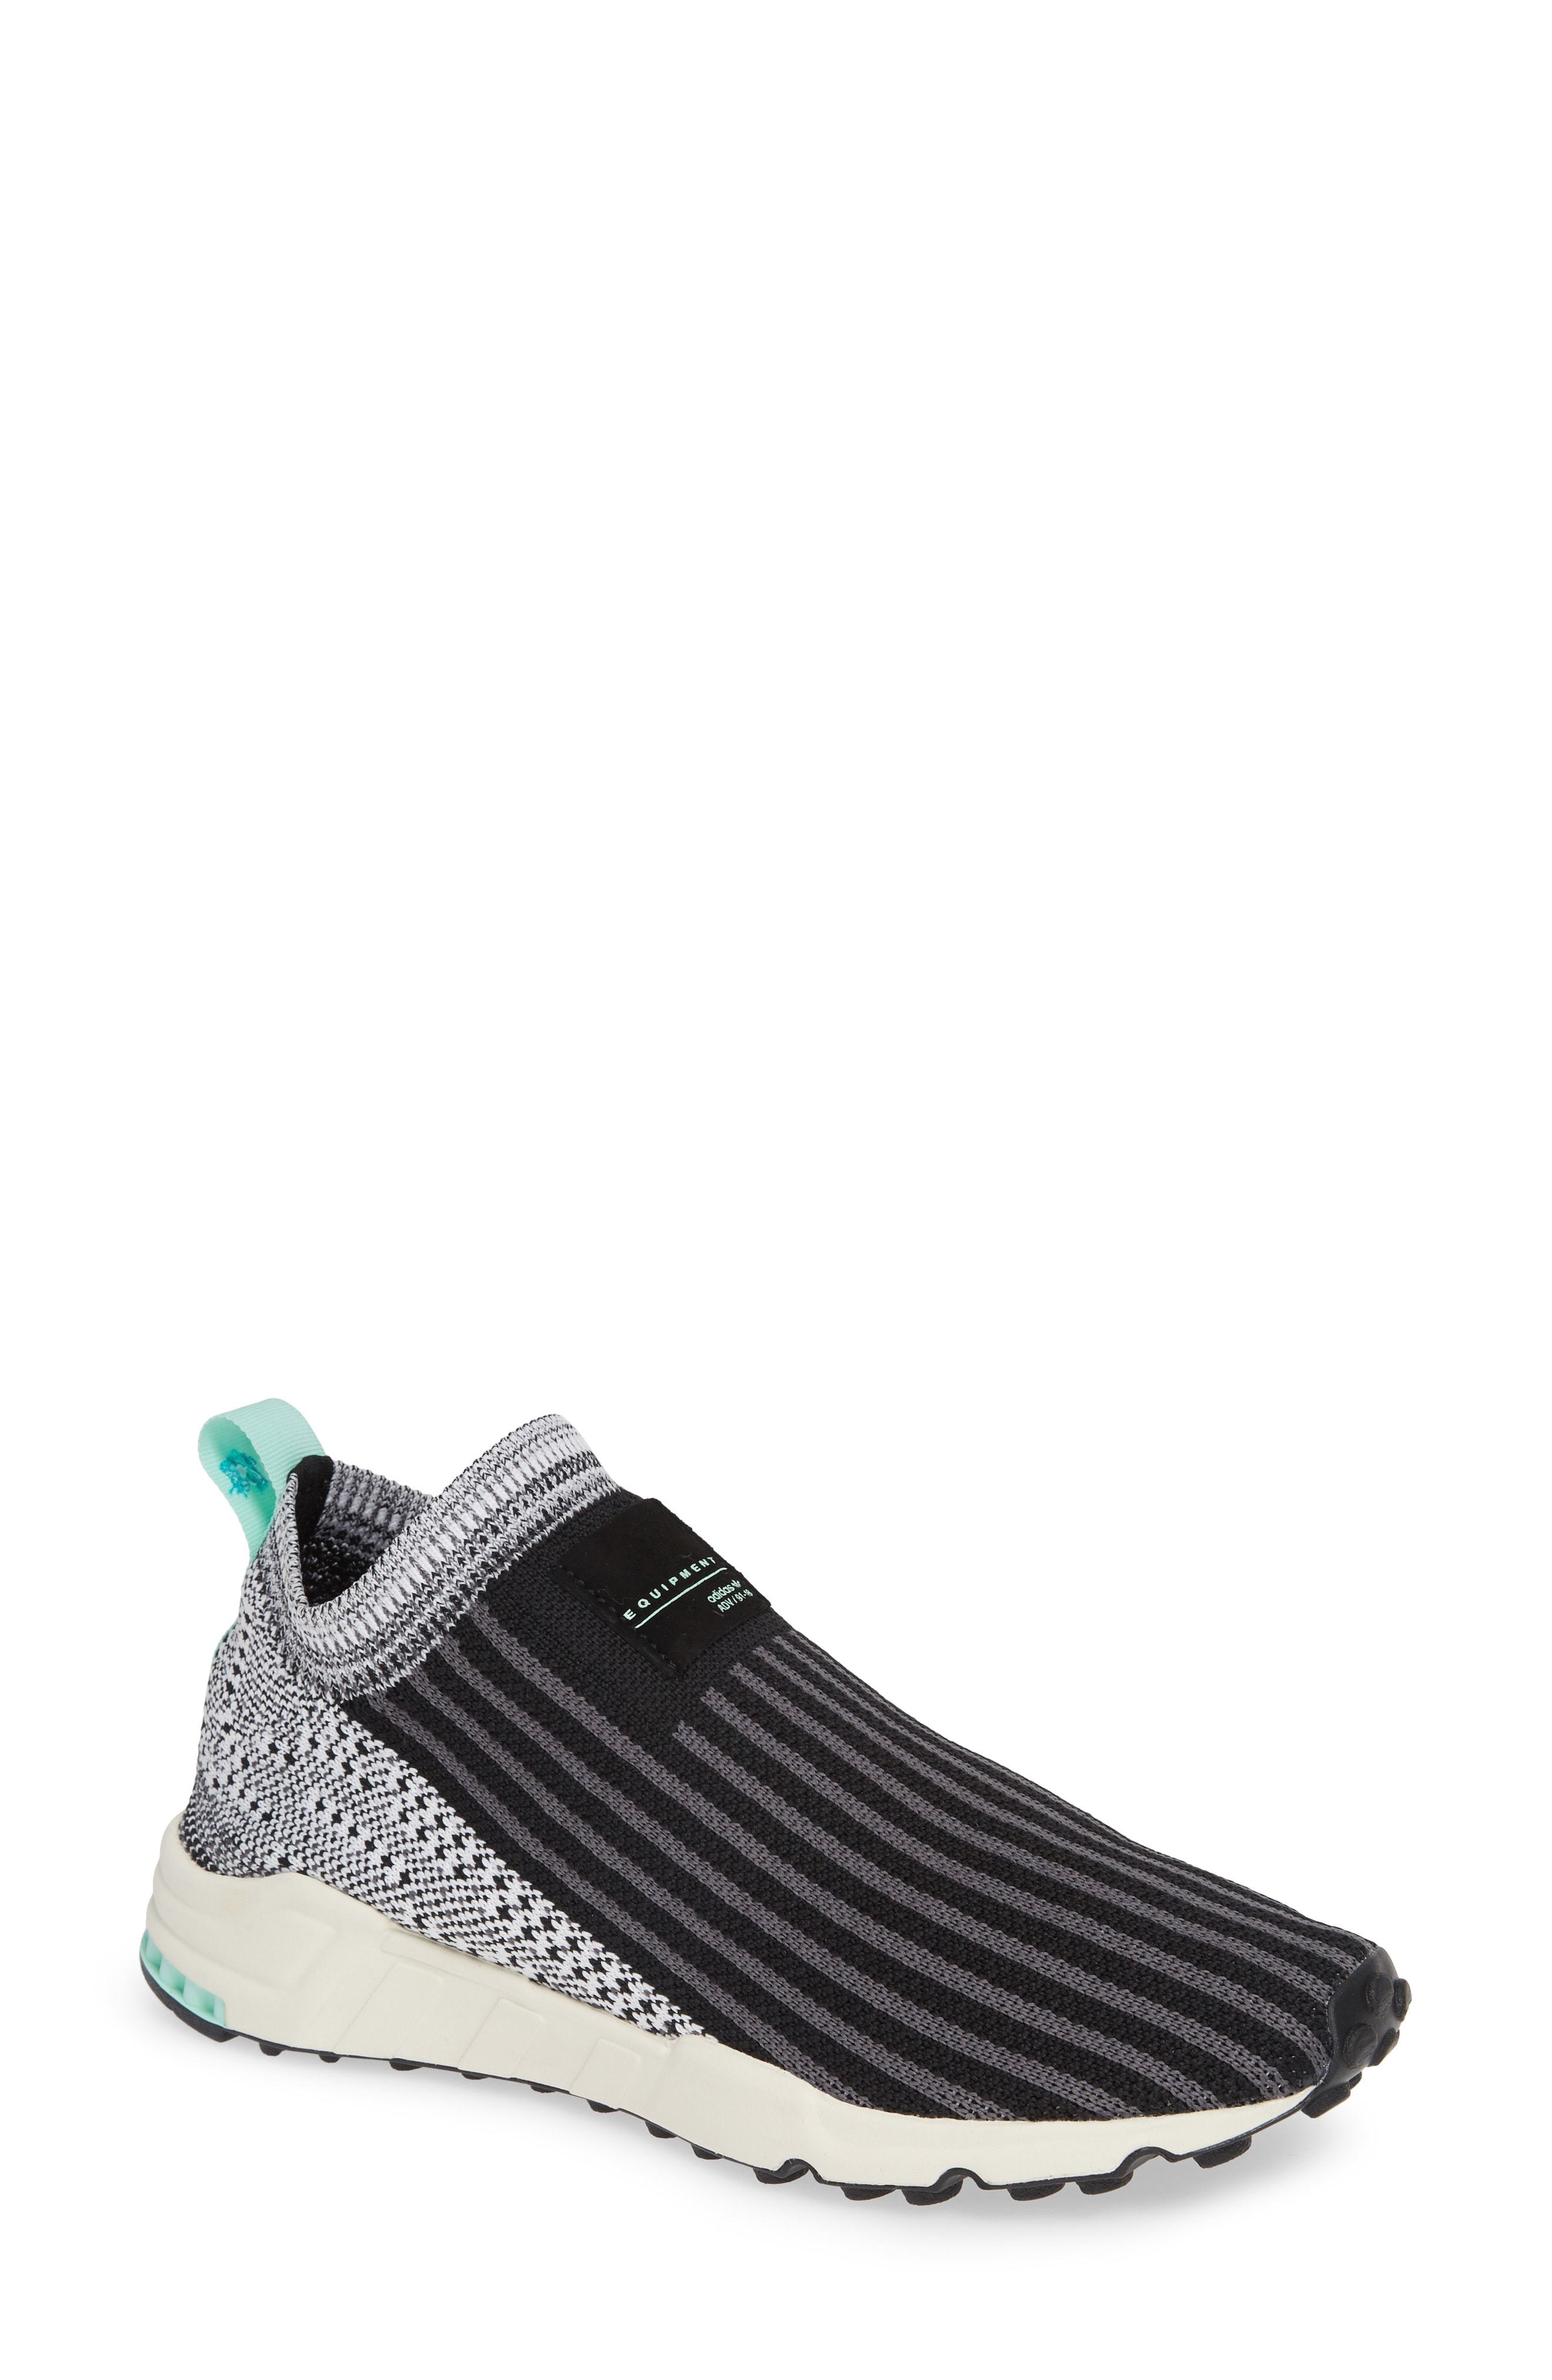 thief tofu Conform adidas Eqt Support Sock Primeknit Sneaker, $71 | Nordstrom | Lookastic